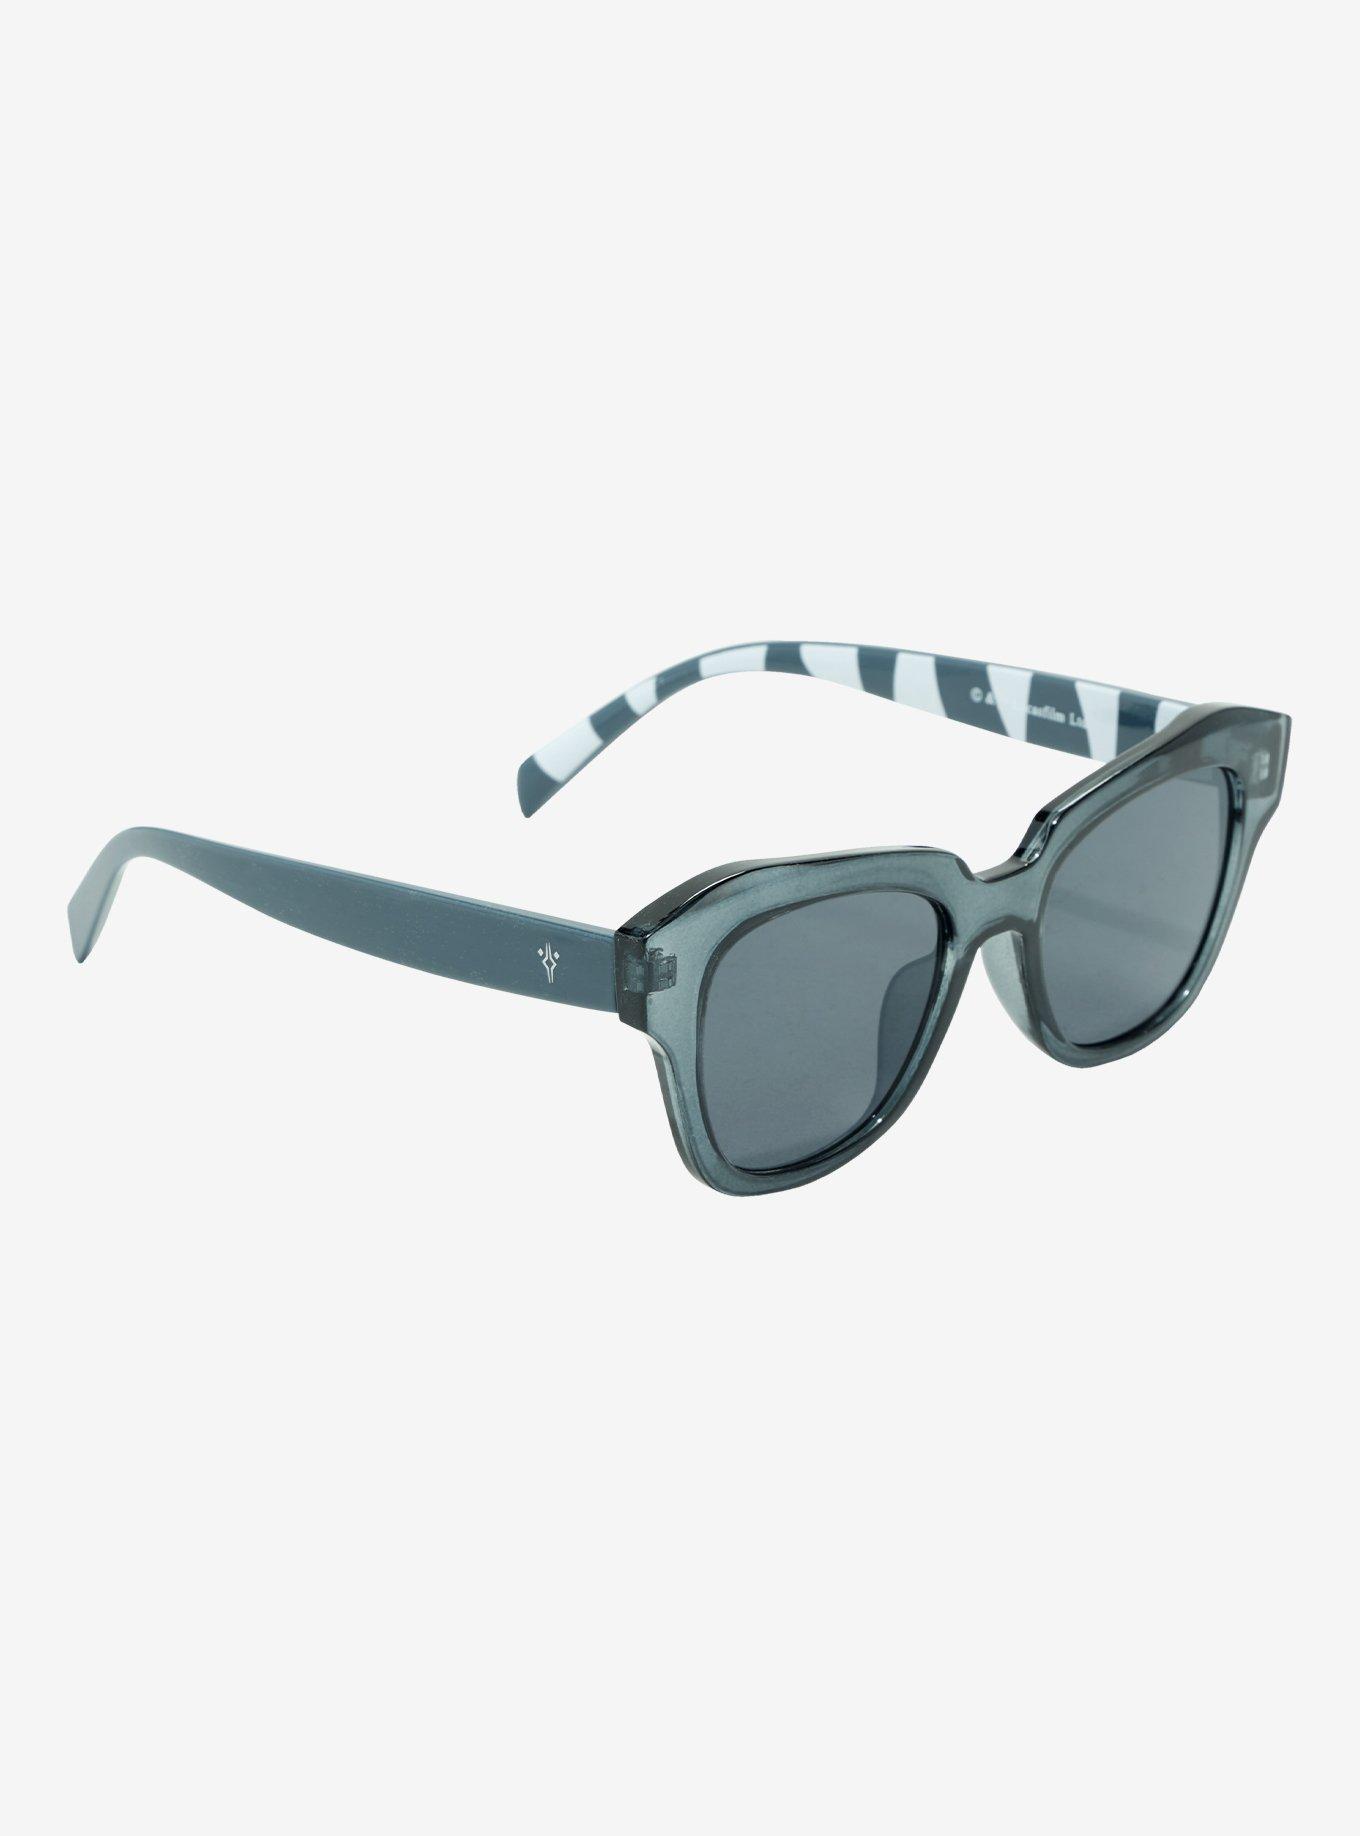 Best louis vuitton woman glasses-sunglasses 2023 - Aliexpress